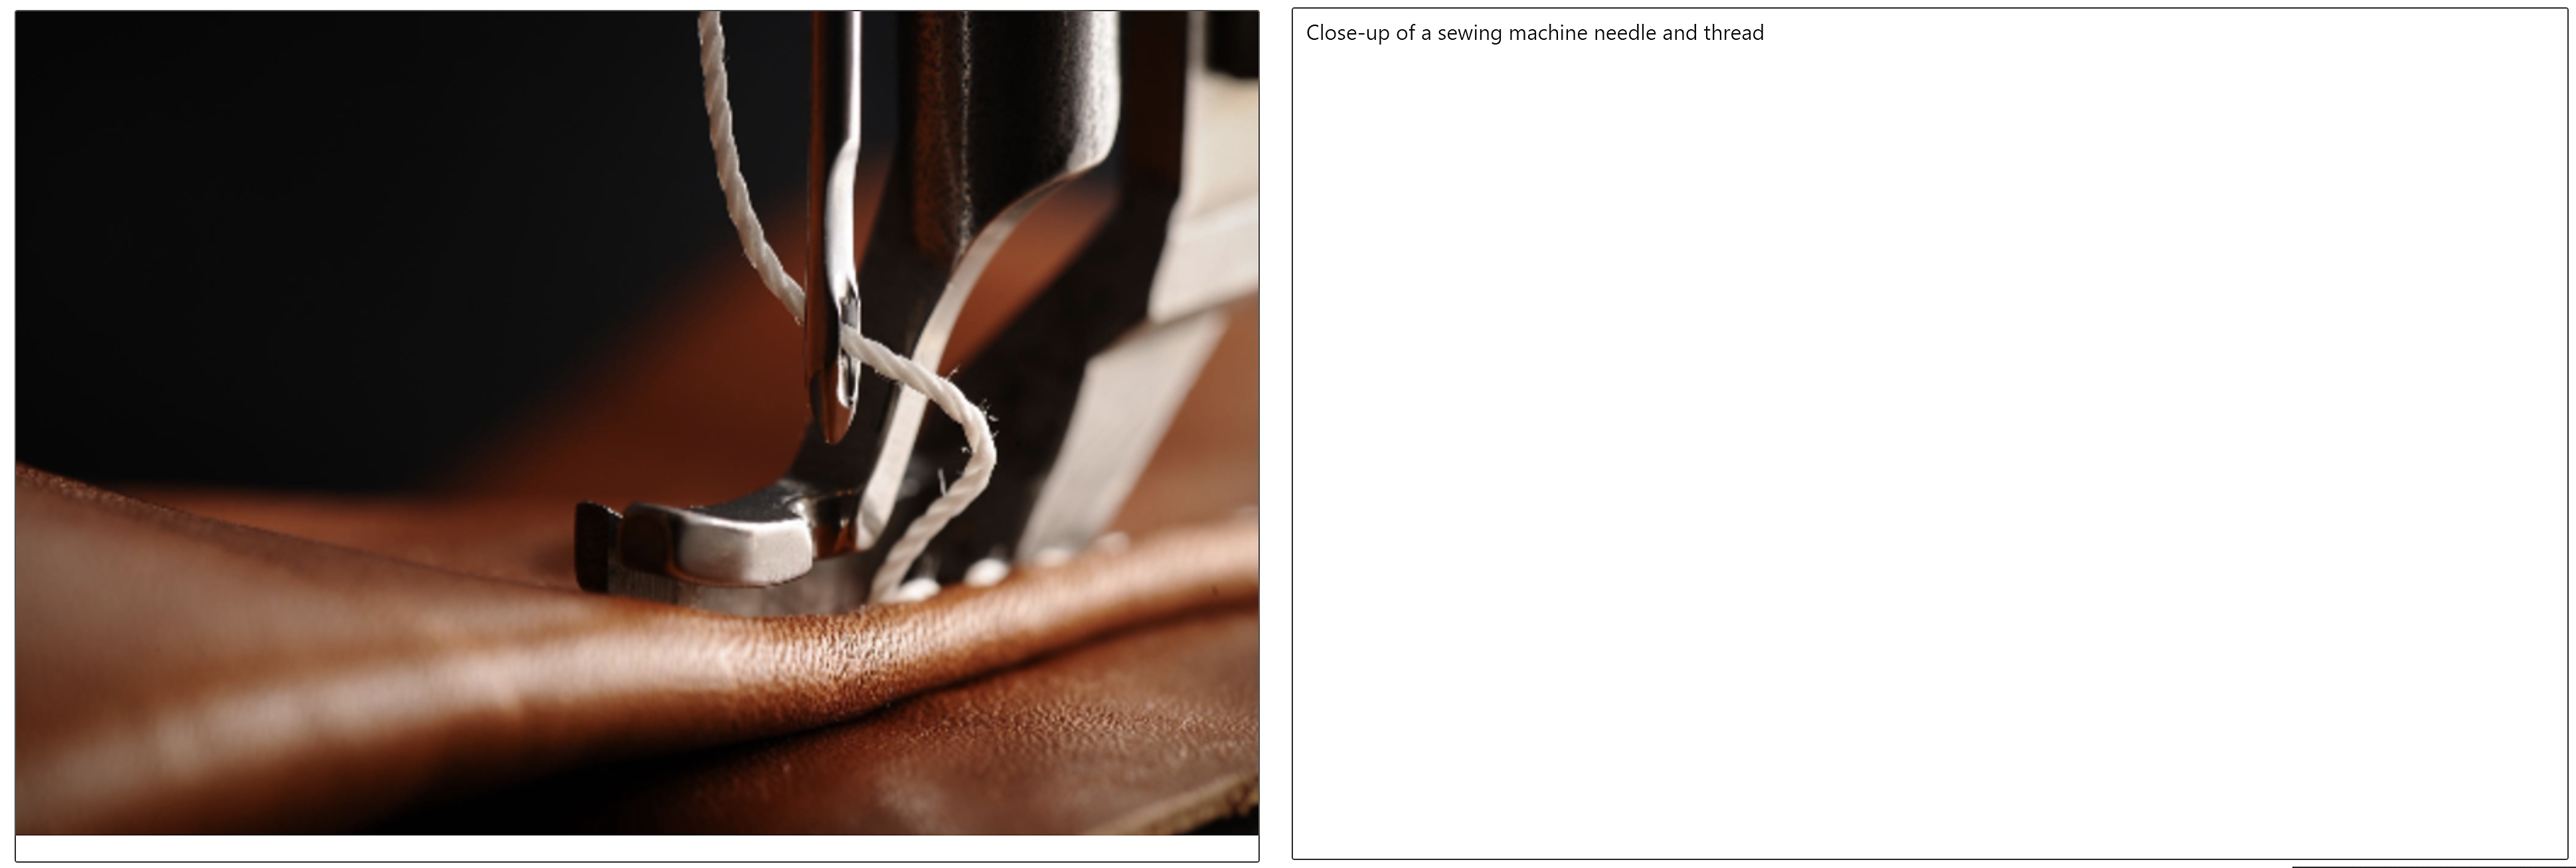 Крупный план изображения иглы с ниткой для швейной машинки в кожаной ткани и подпись изображения рядом с ним 